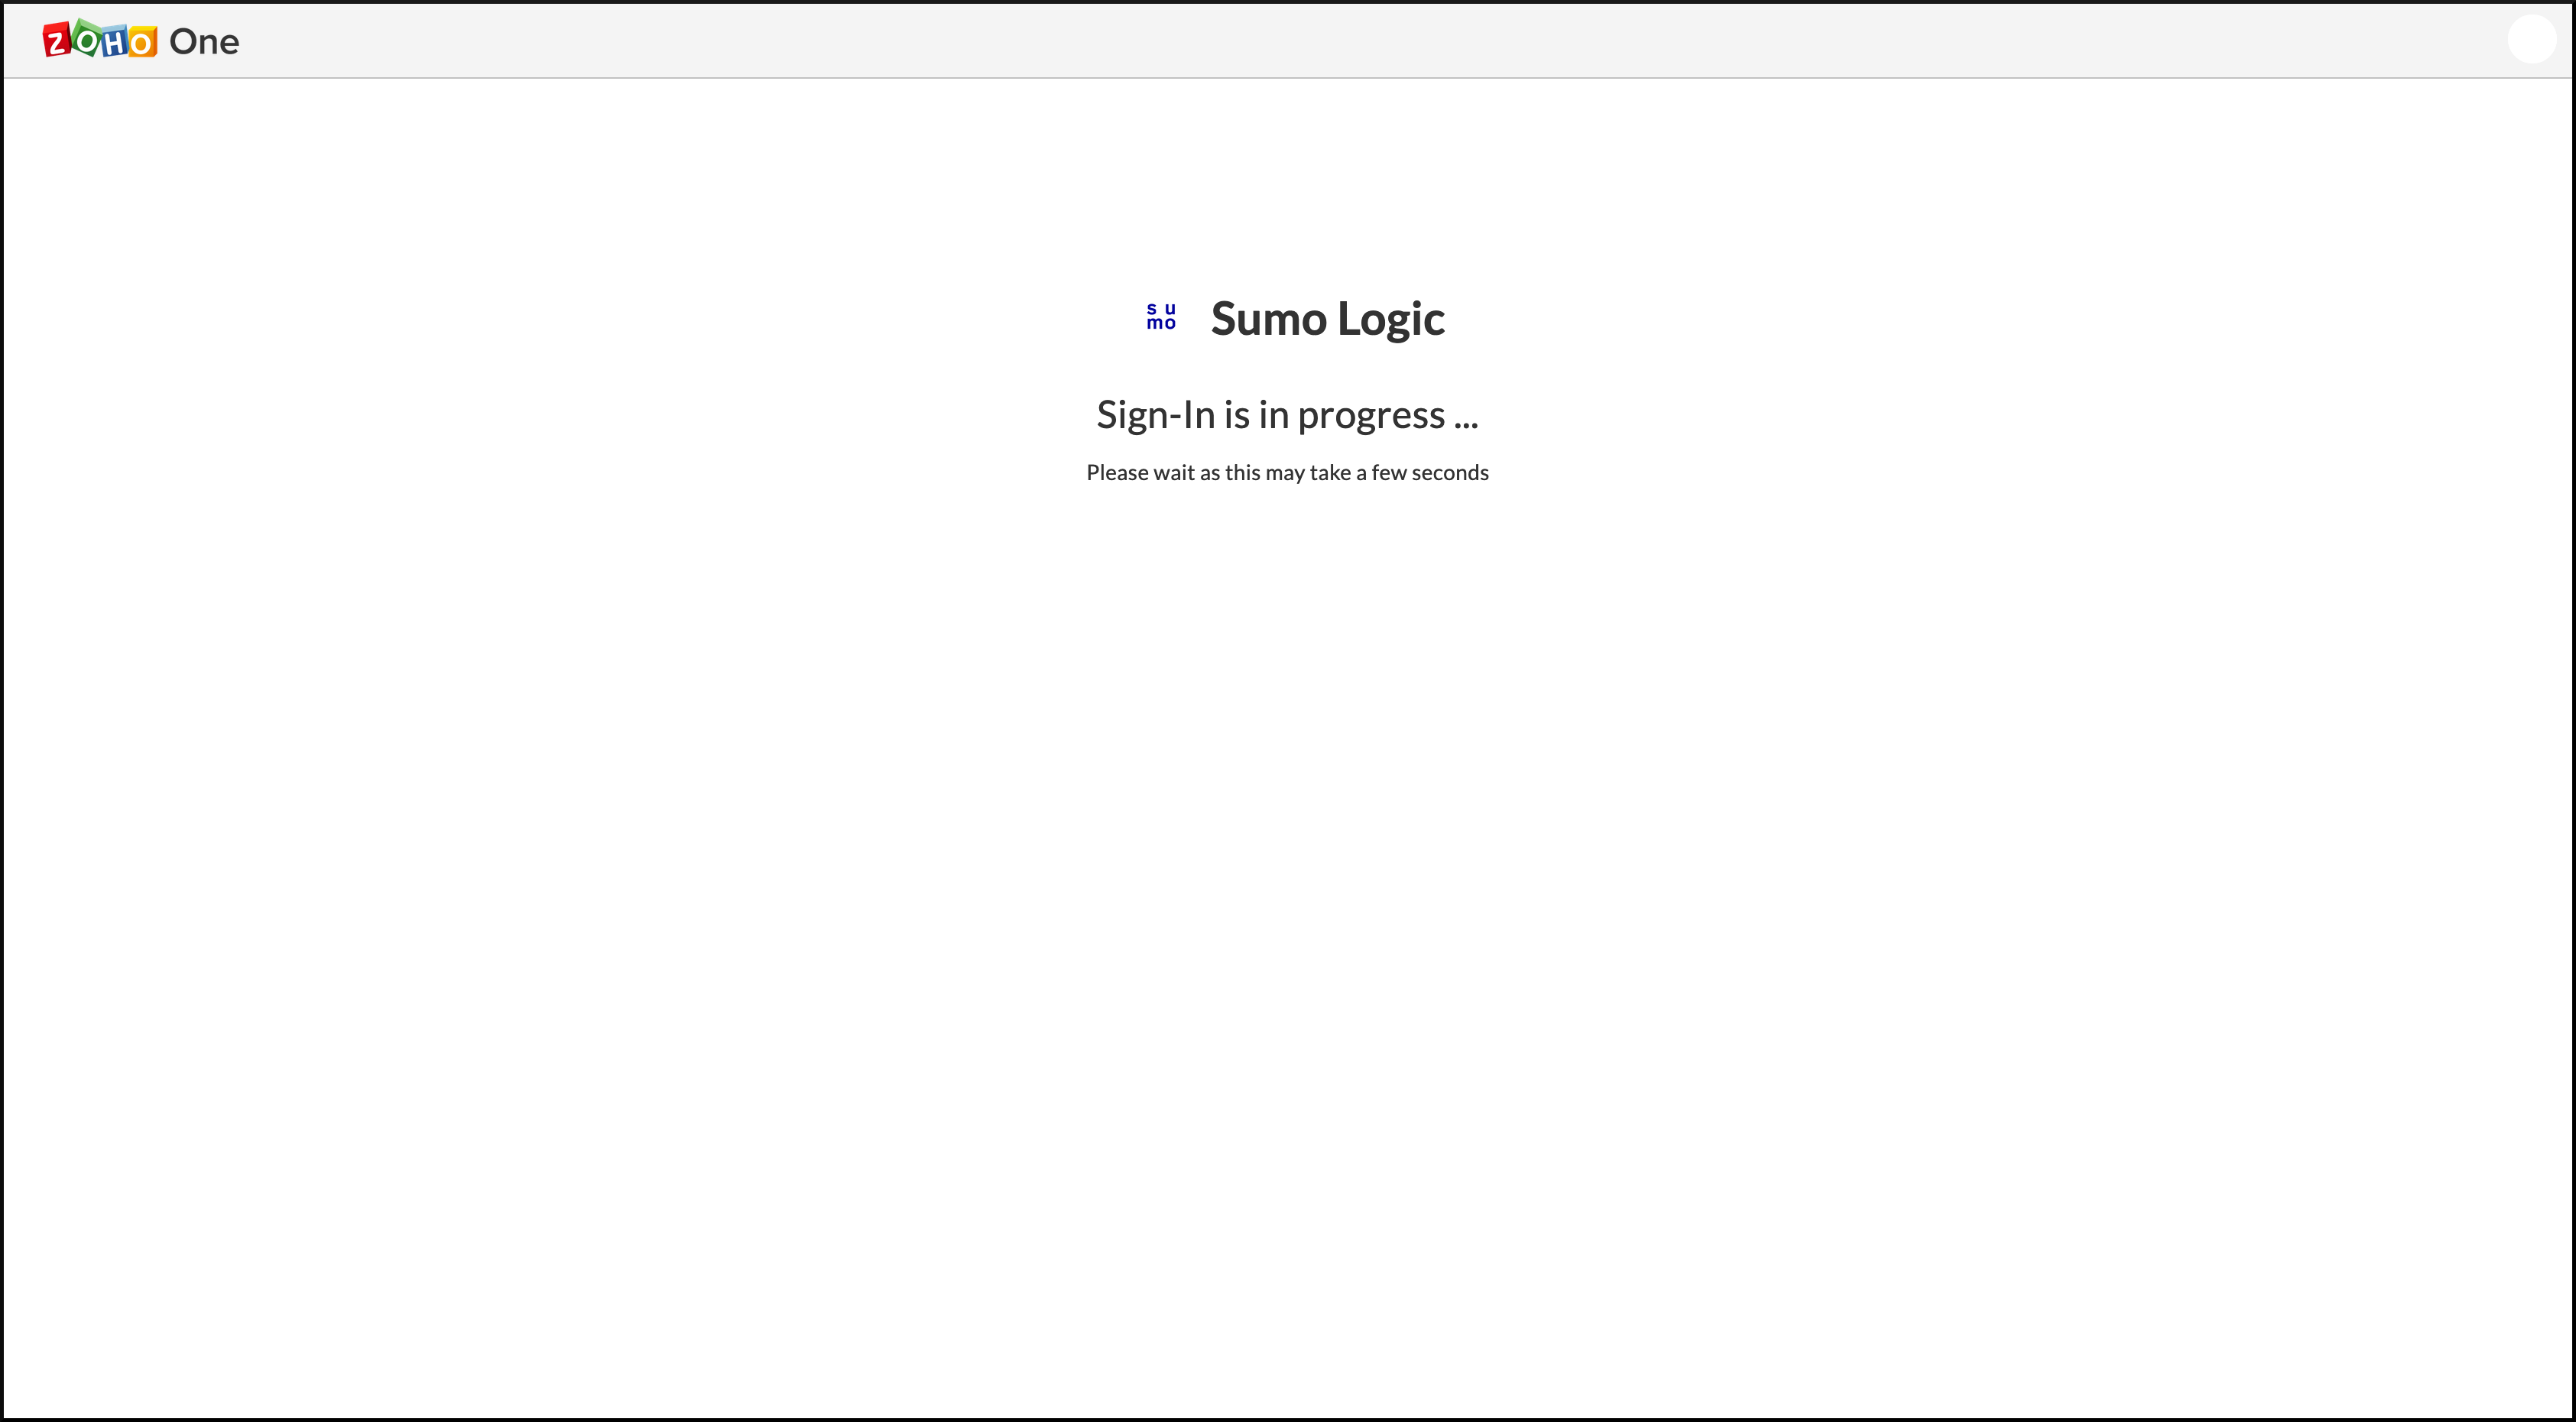 シングルサインオンによるSumo Logicへのサインイン